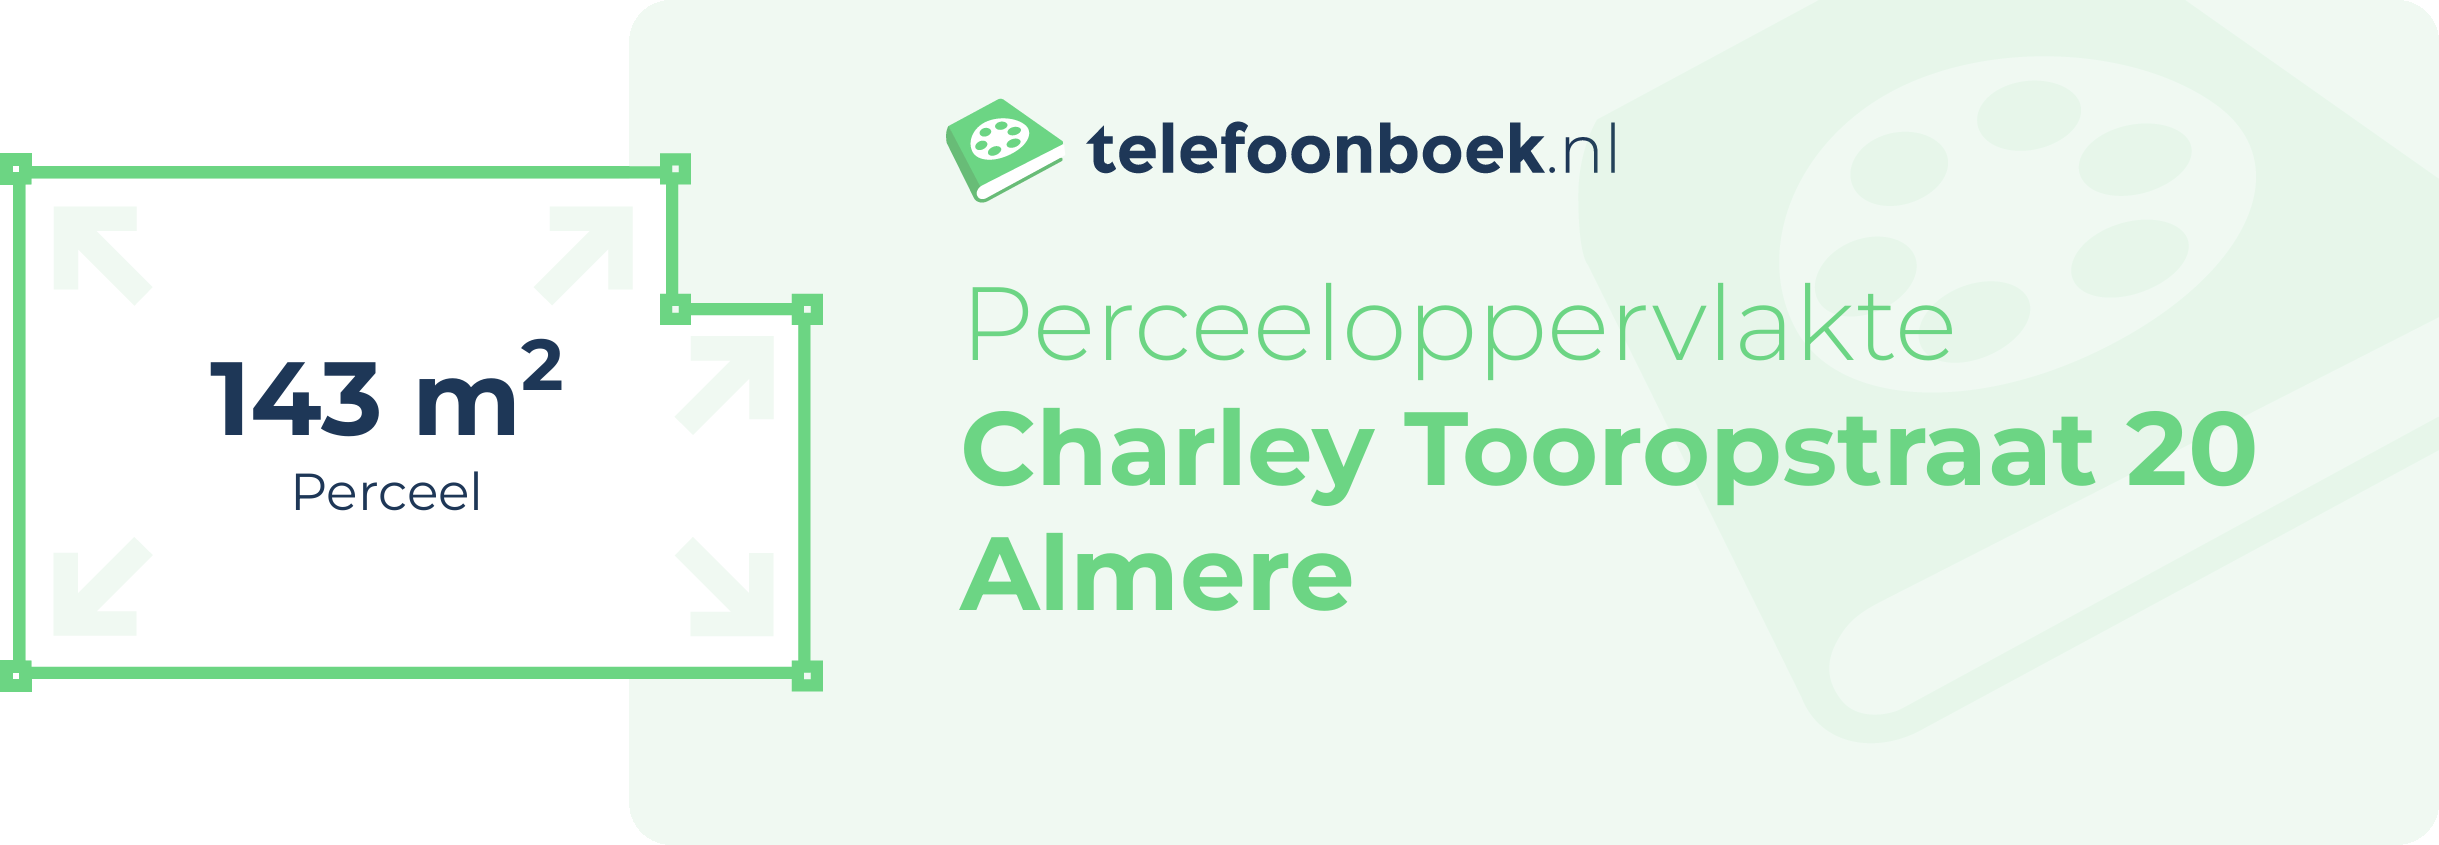 Perceeloppervlakte Charley Tooropstraat 20 Almere